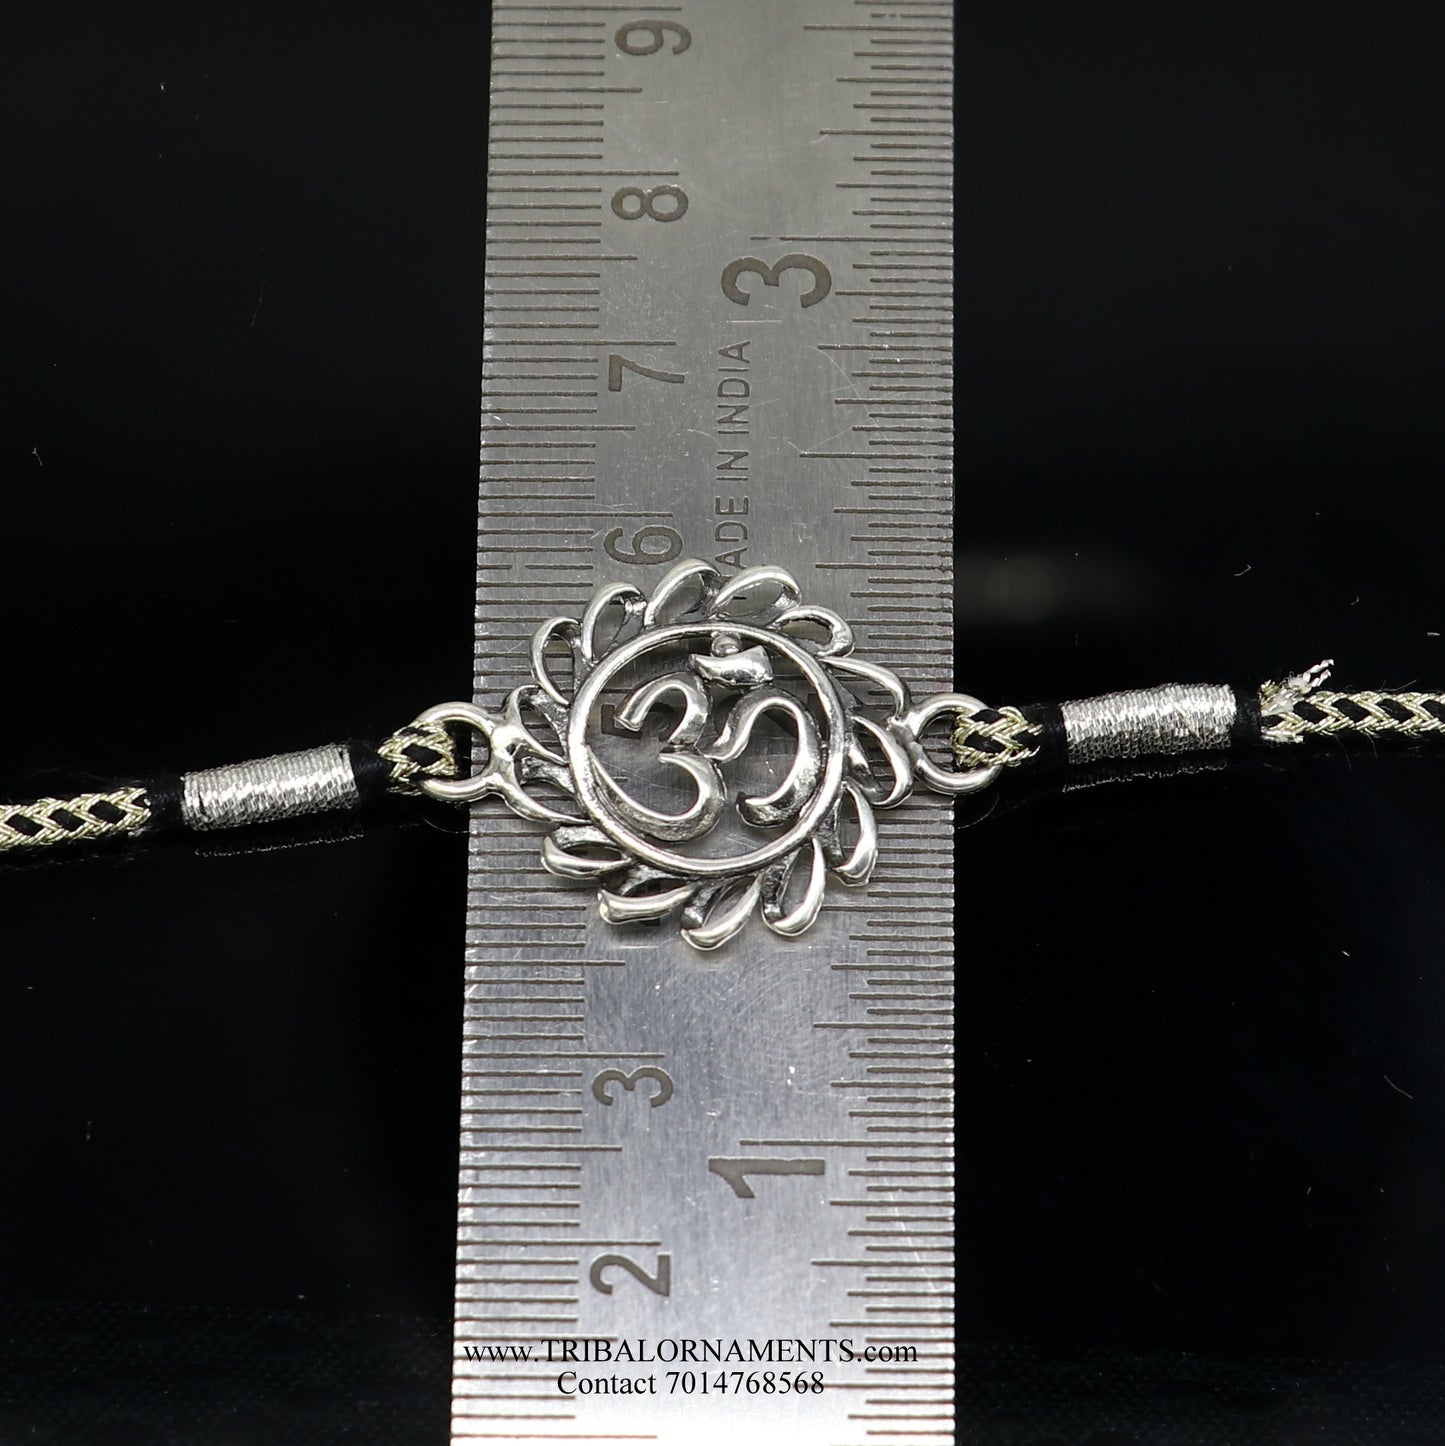 925 sterling silver handmade AUM design Rakhi Bracelet, amazing stylish gift for Rakshabandhan rk71 - TRIBAL ORNAMENTS